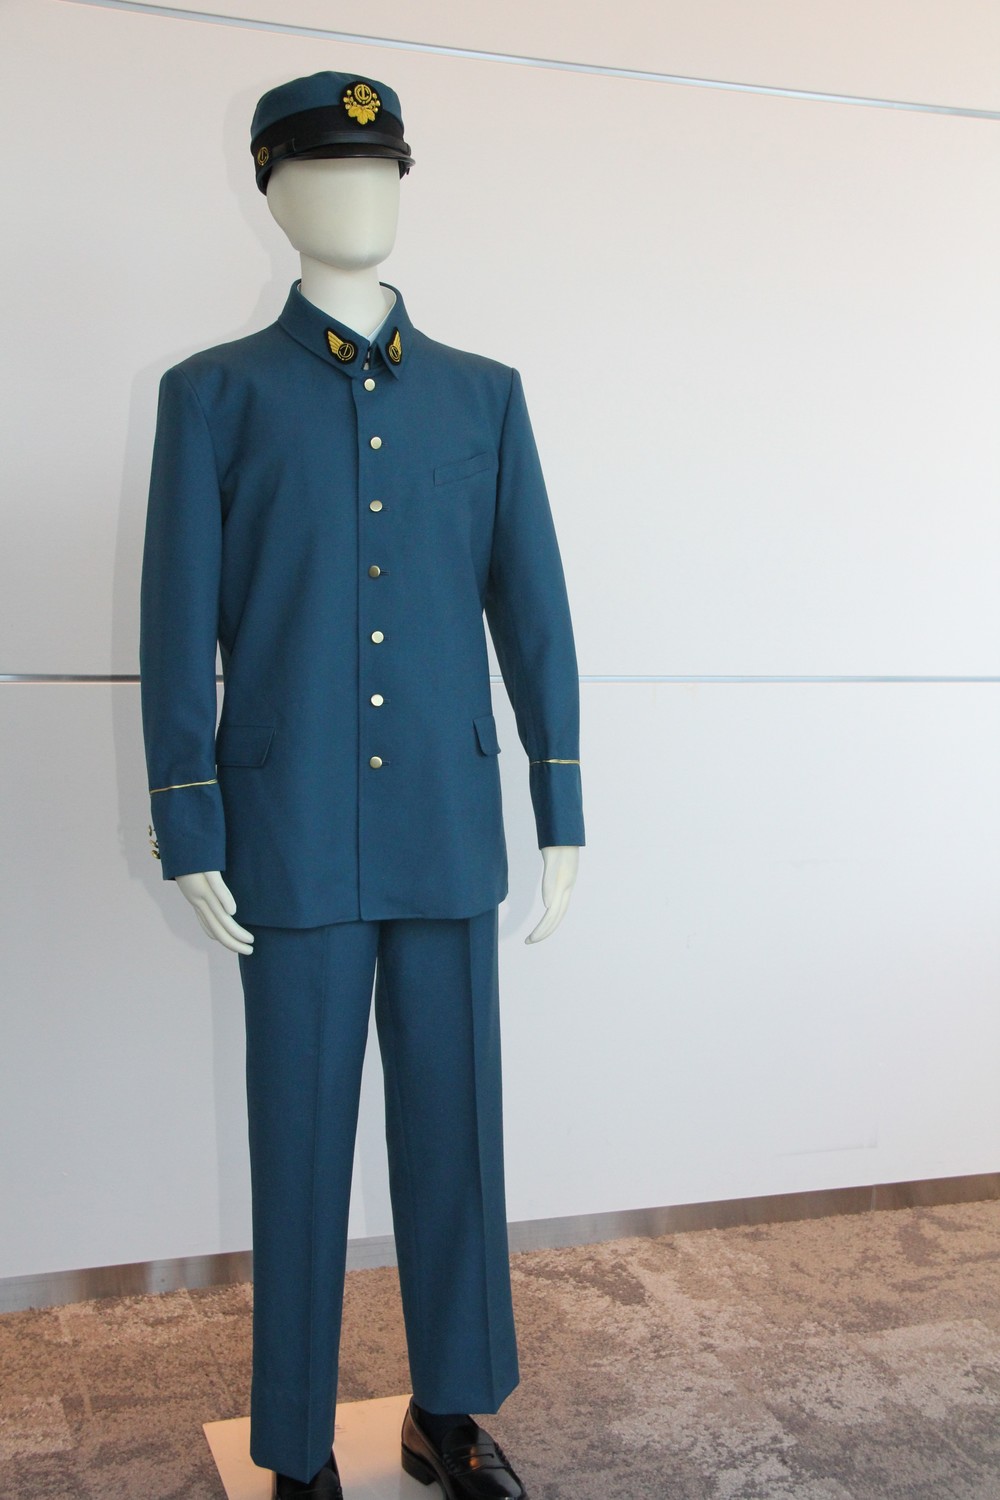 明るいブルーでヨーロッパ風の、戦前としてはモダンな東京地下鉄道制服